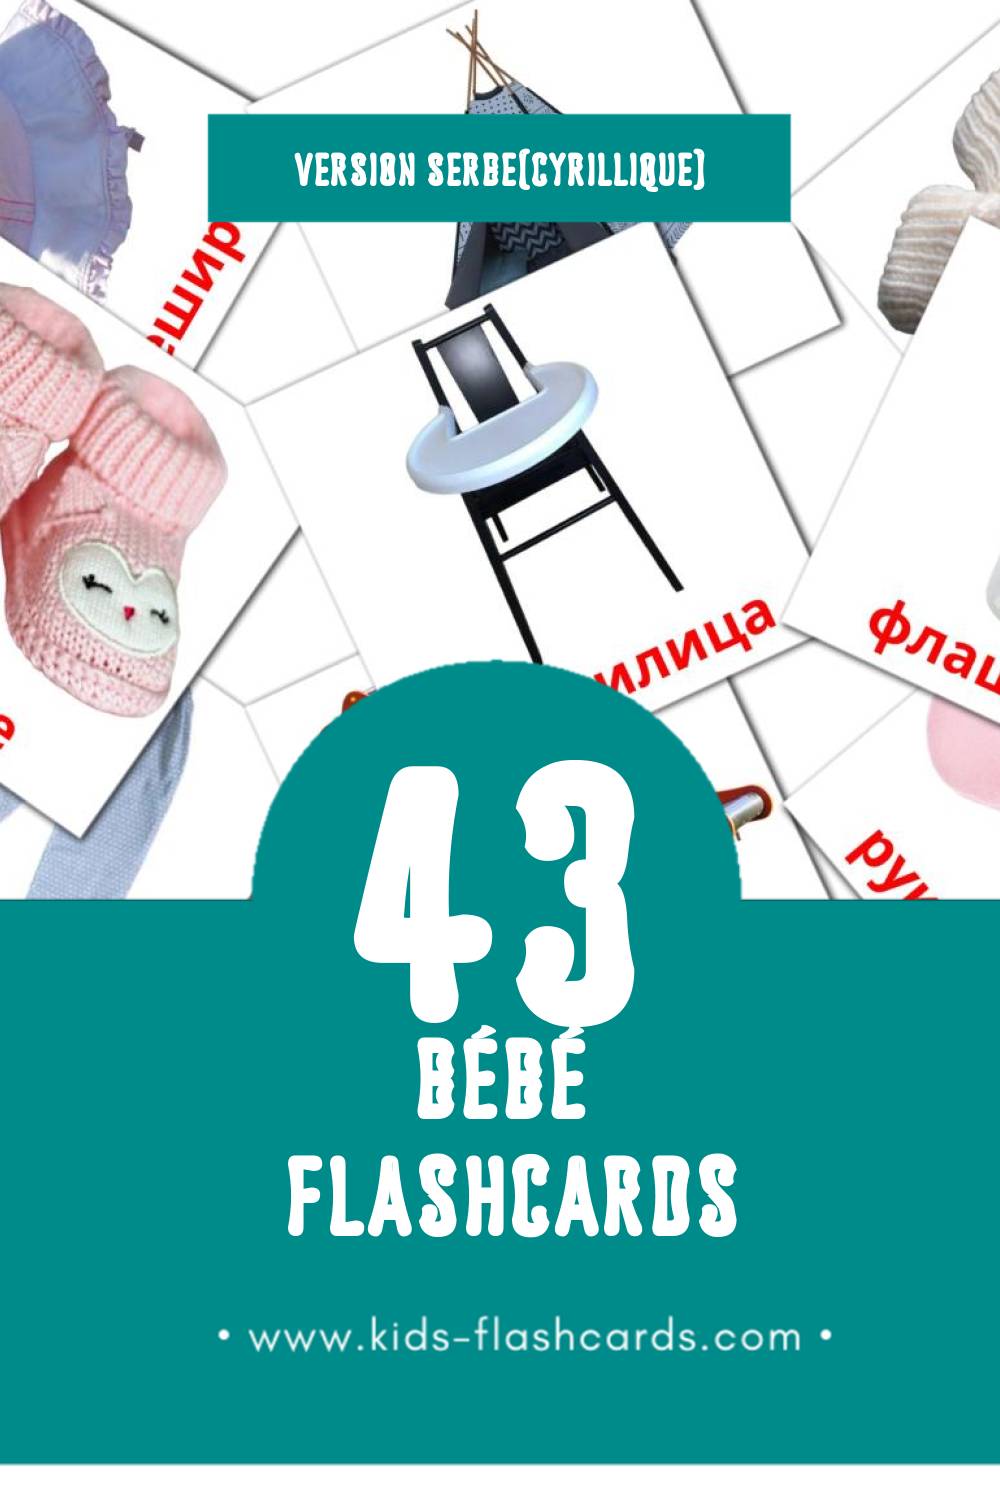 Flashcards Visual Беба pour les tout-petits (43 cartes en Serbe(cyrillique))